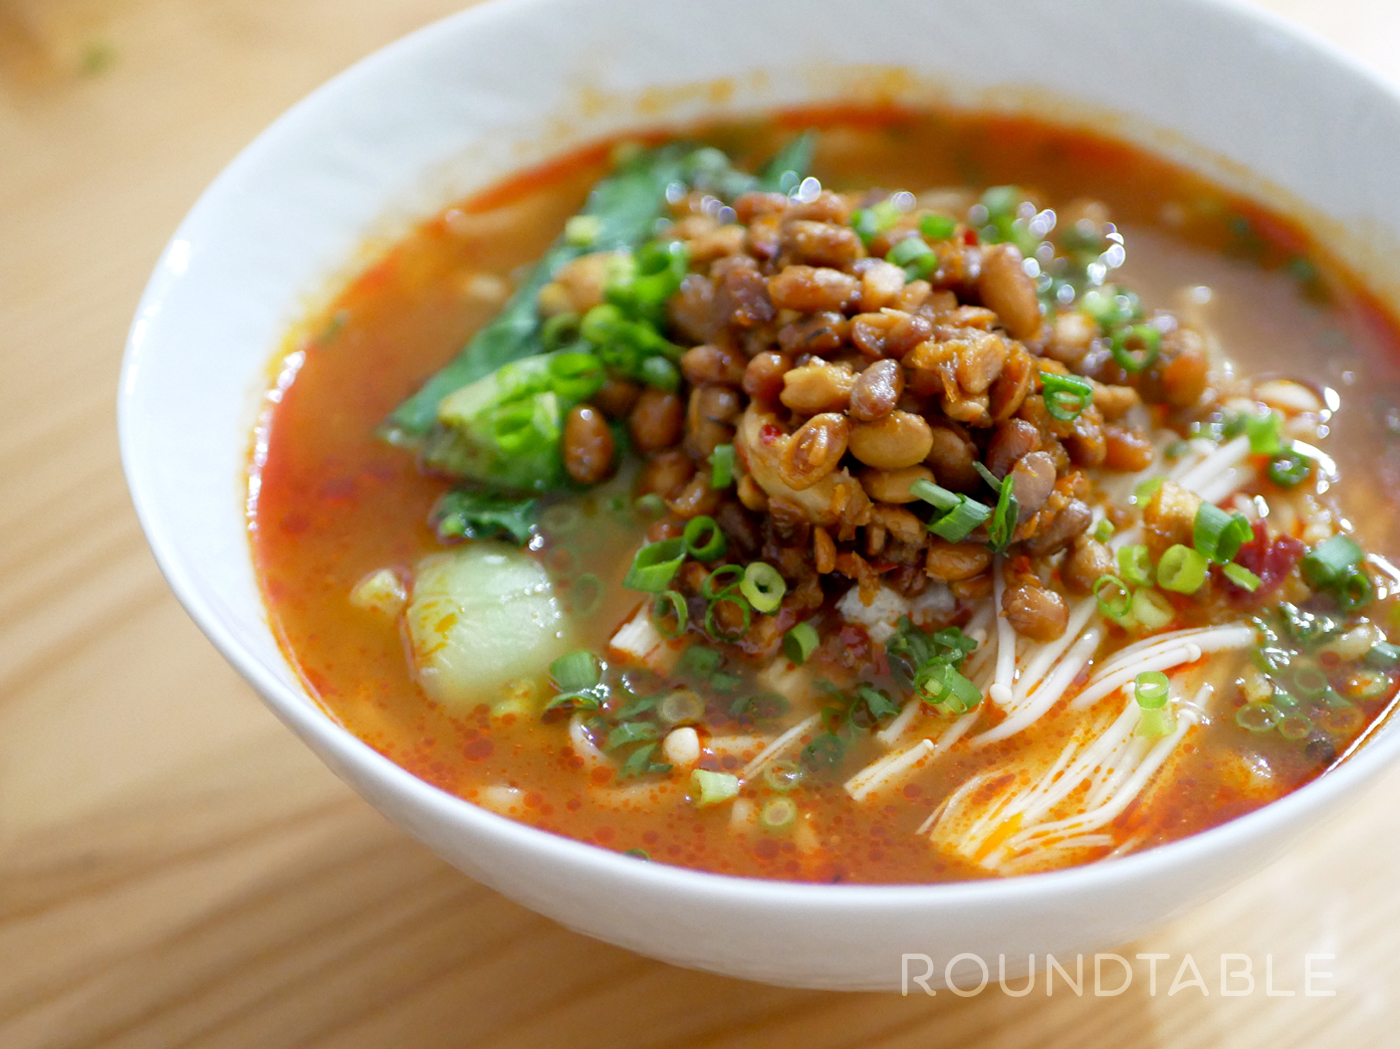 ラーメンと豚汁を 貴州の豆豉 とうち 風味にしよう Roundtable ラウンドテーブル ー貴州省 雲南省をはじめと した中華圏の食文化を楽しめる場を提案するウェブメディア